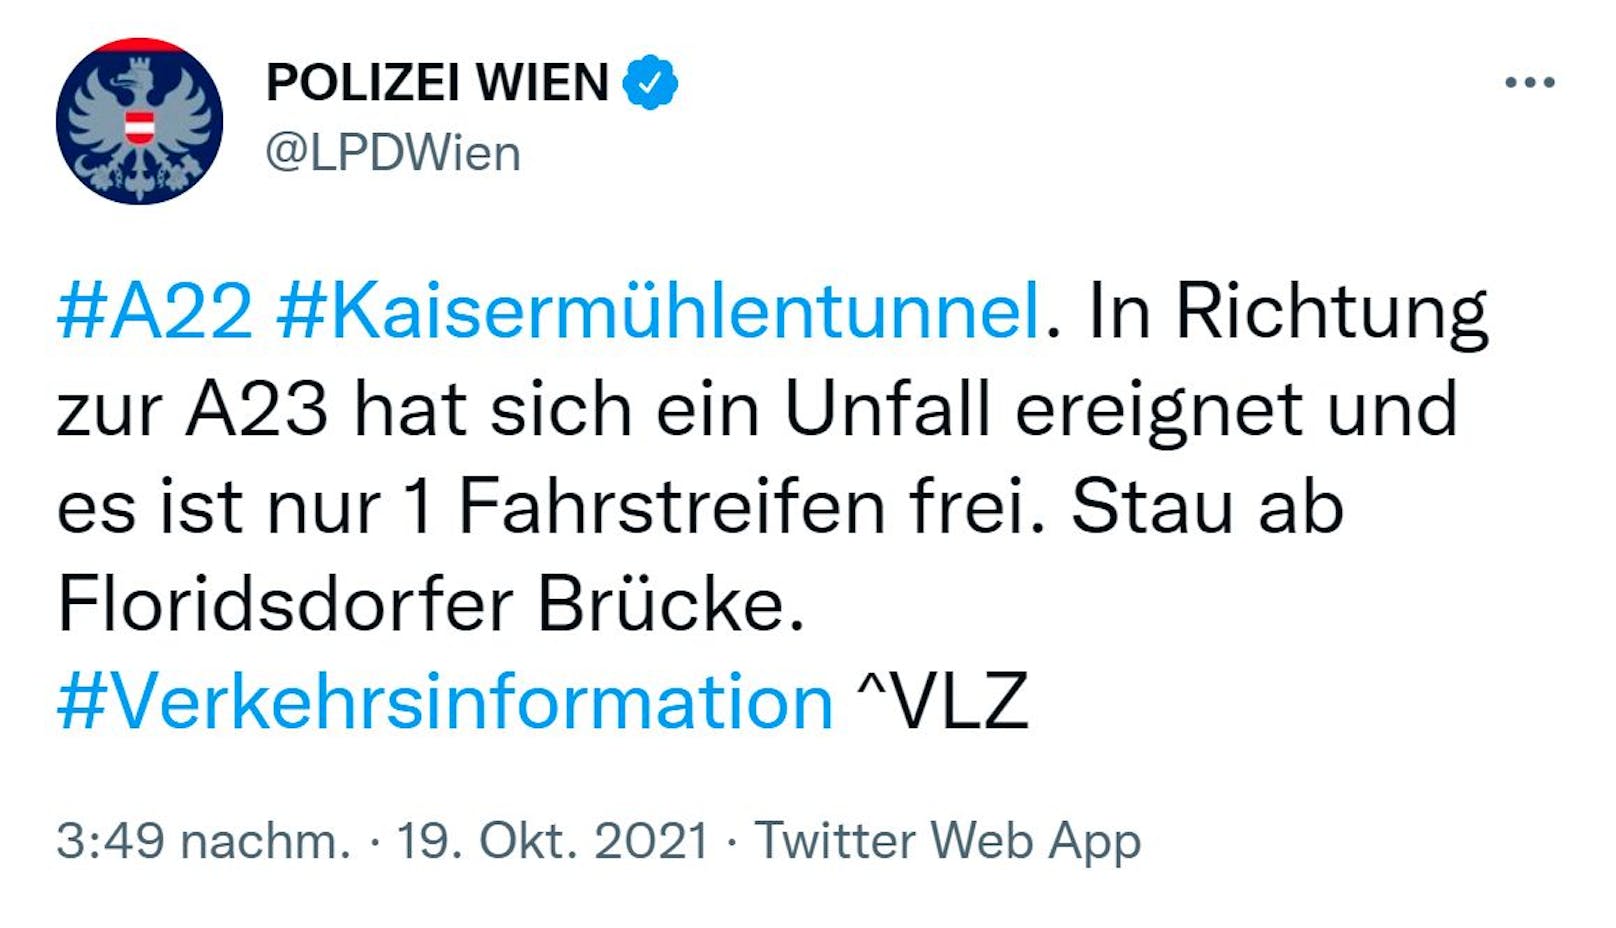 Die Wiener Polizei meldete den Unfall via Twitter.